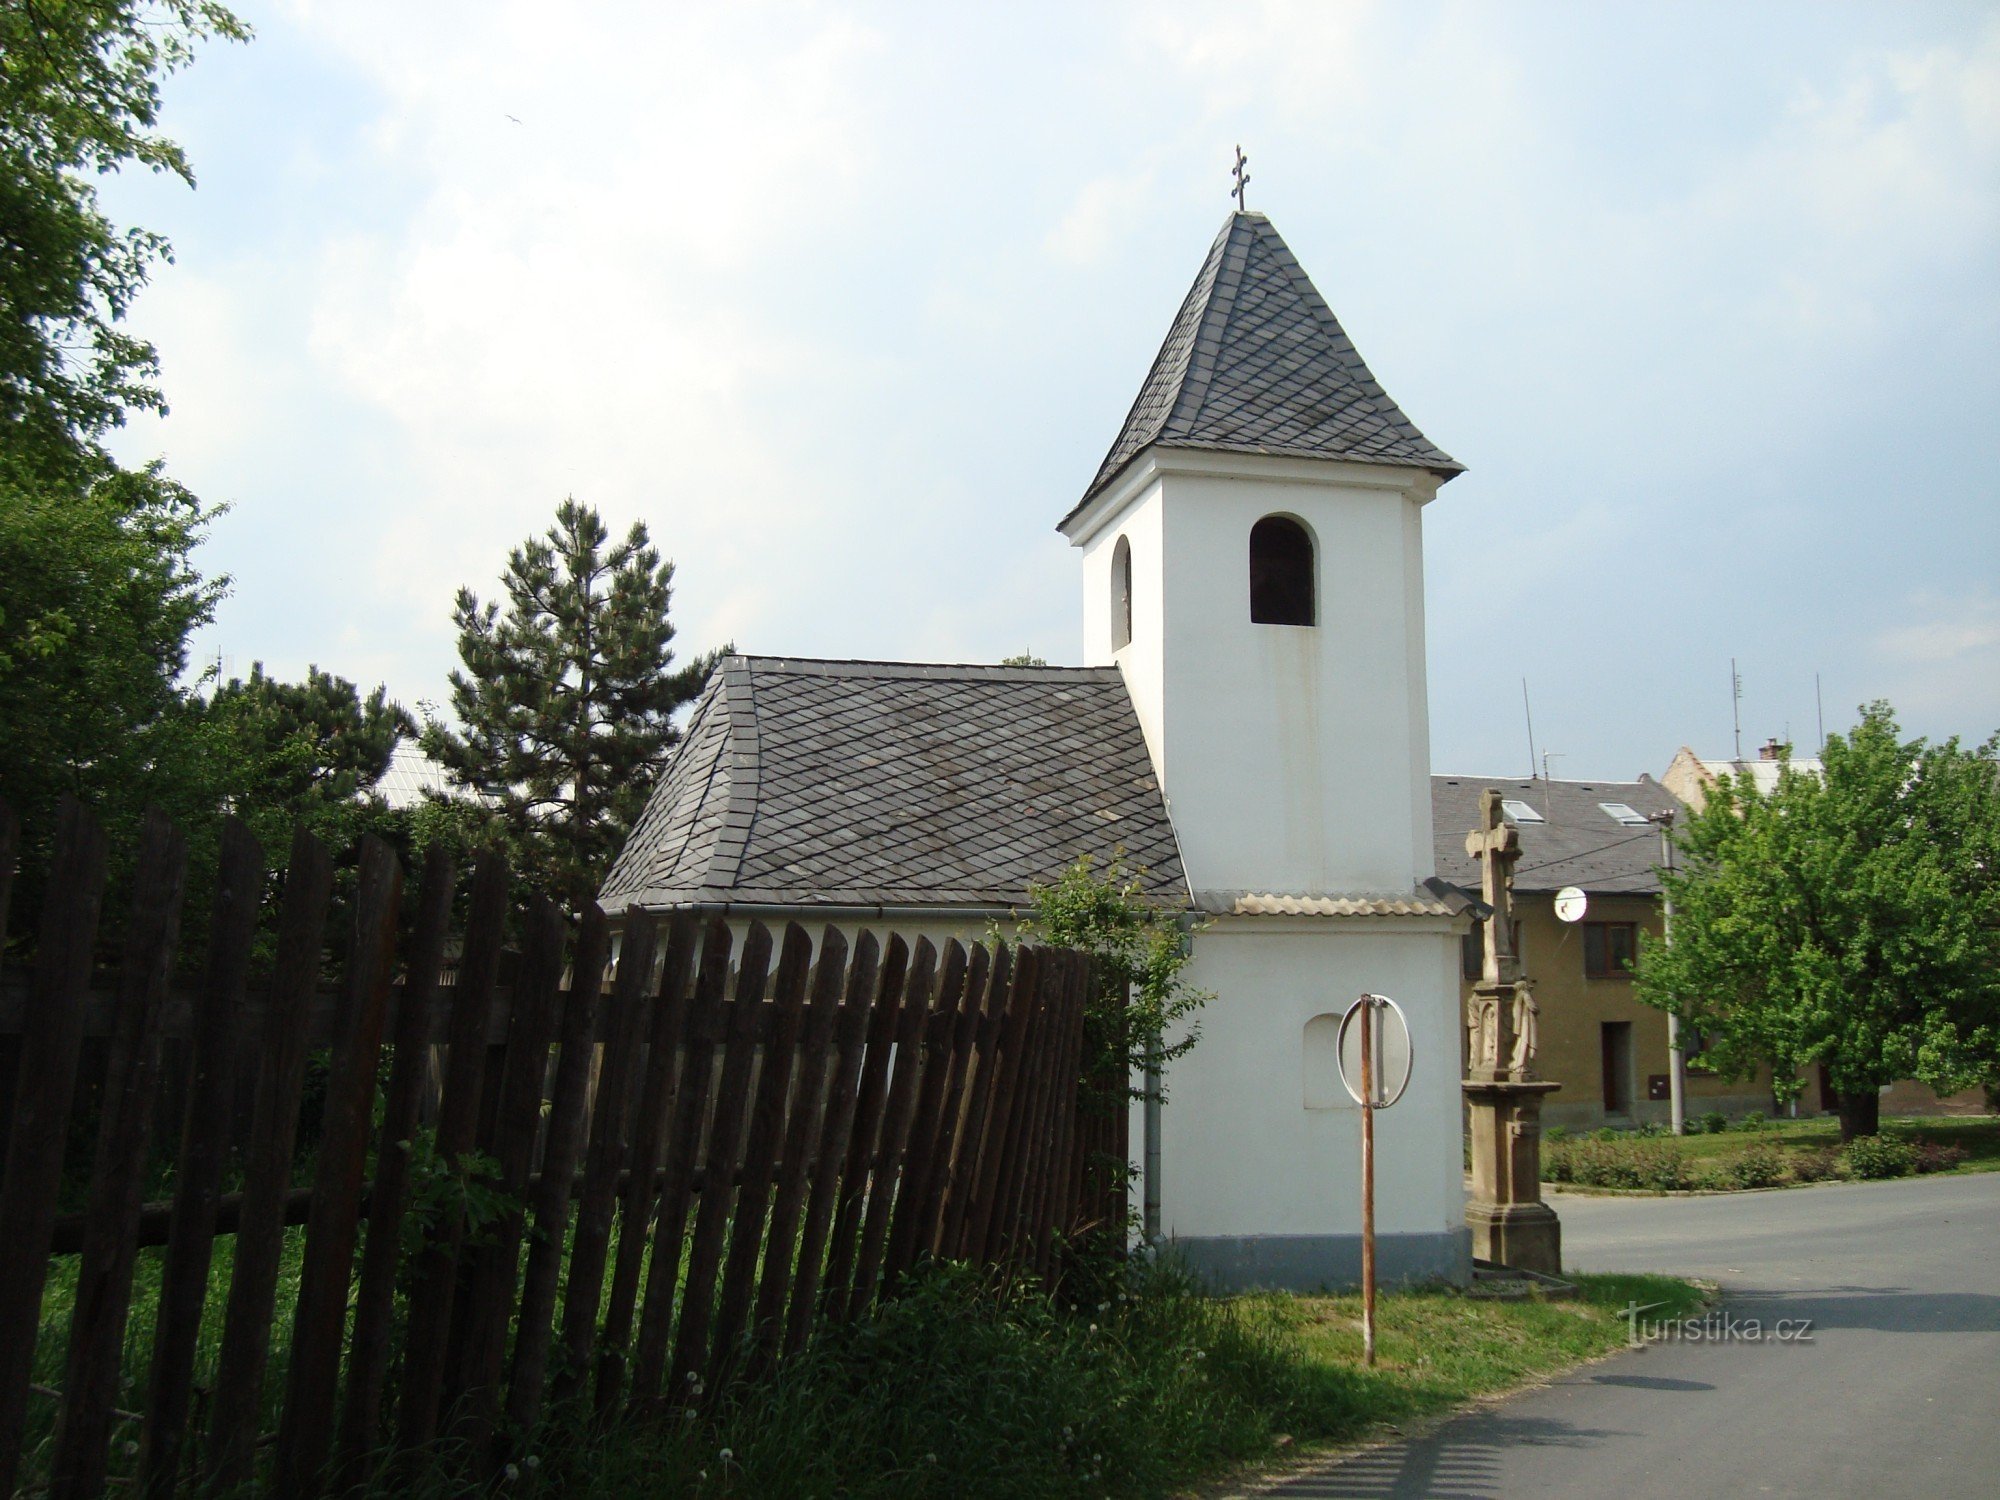 白杨树 - Nedbalova 街上的半独立式住宅 - 1739 年的圣弗洛里安教堂和 1861 年的十字架